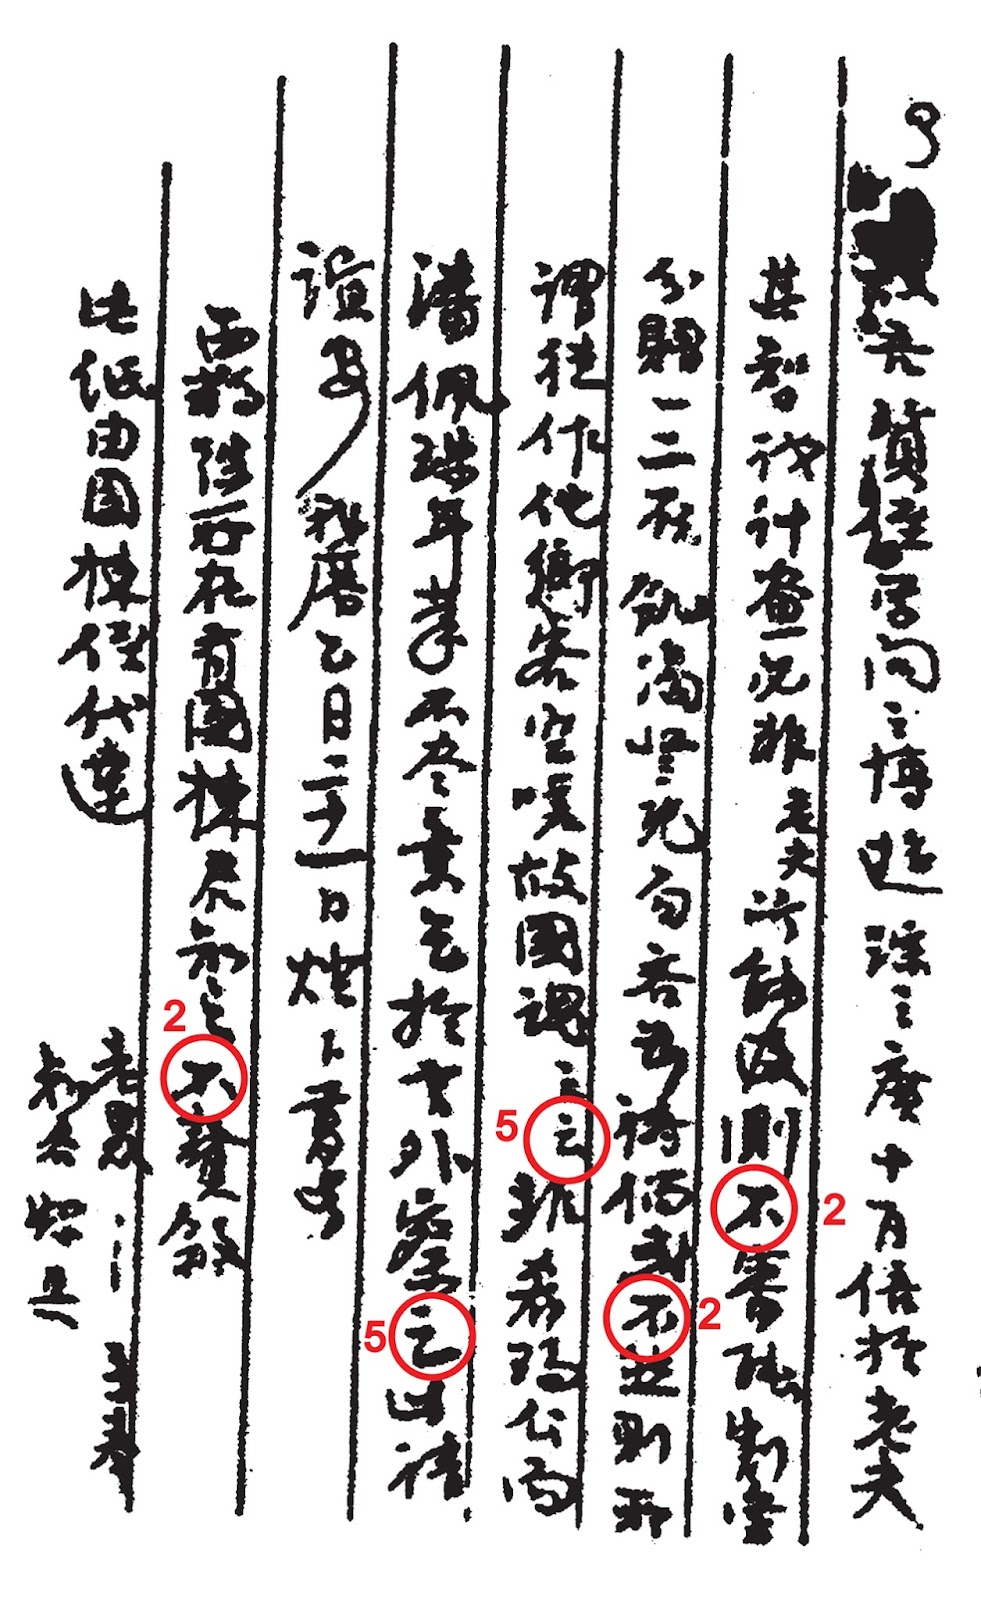 Trang 3 thư Phan Bội Châu gởi Lý Thụy - những chữ Chi và Bất 200 dpi.jpg